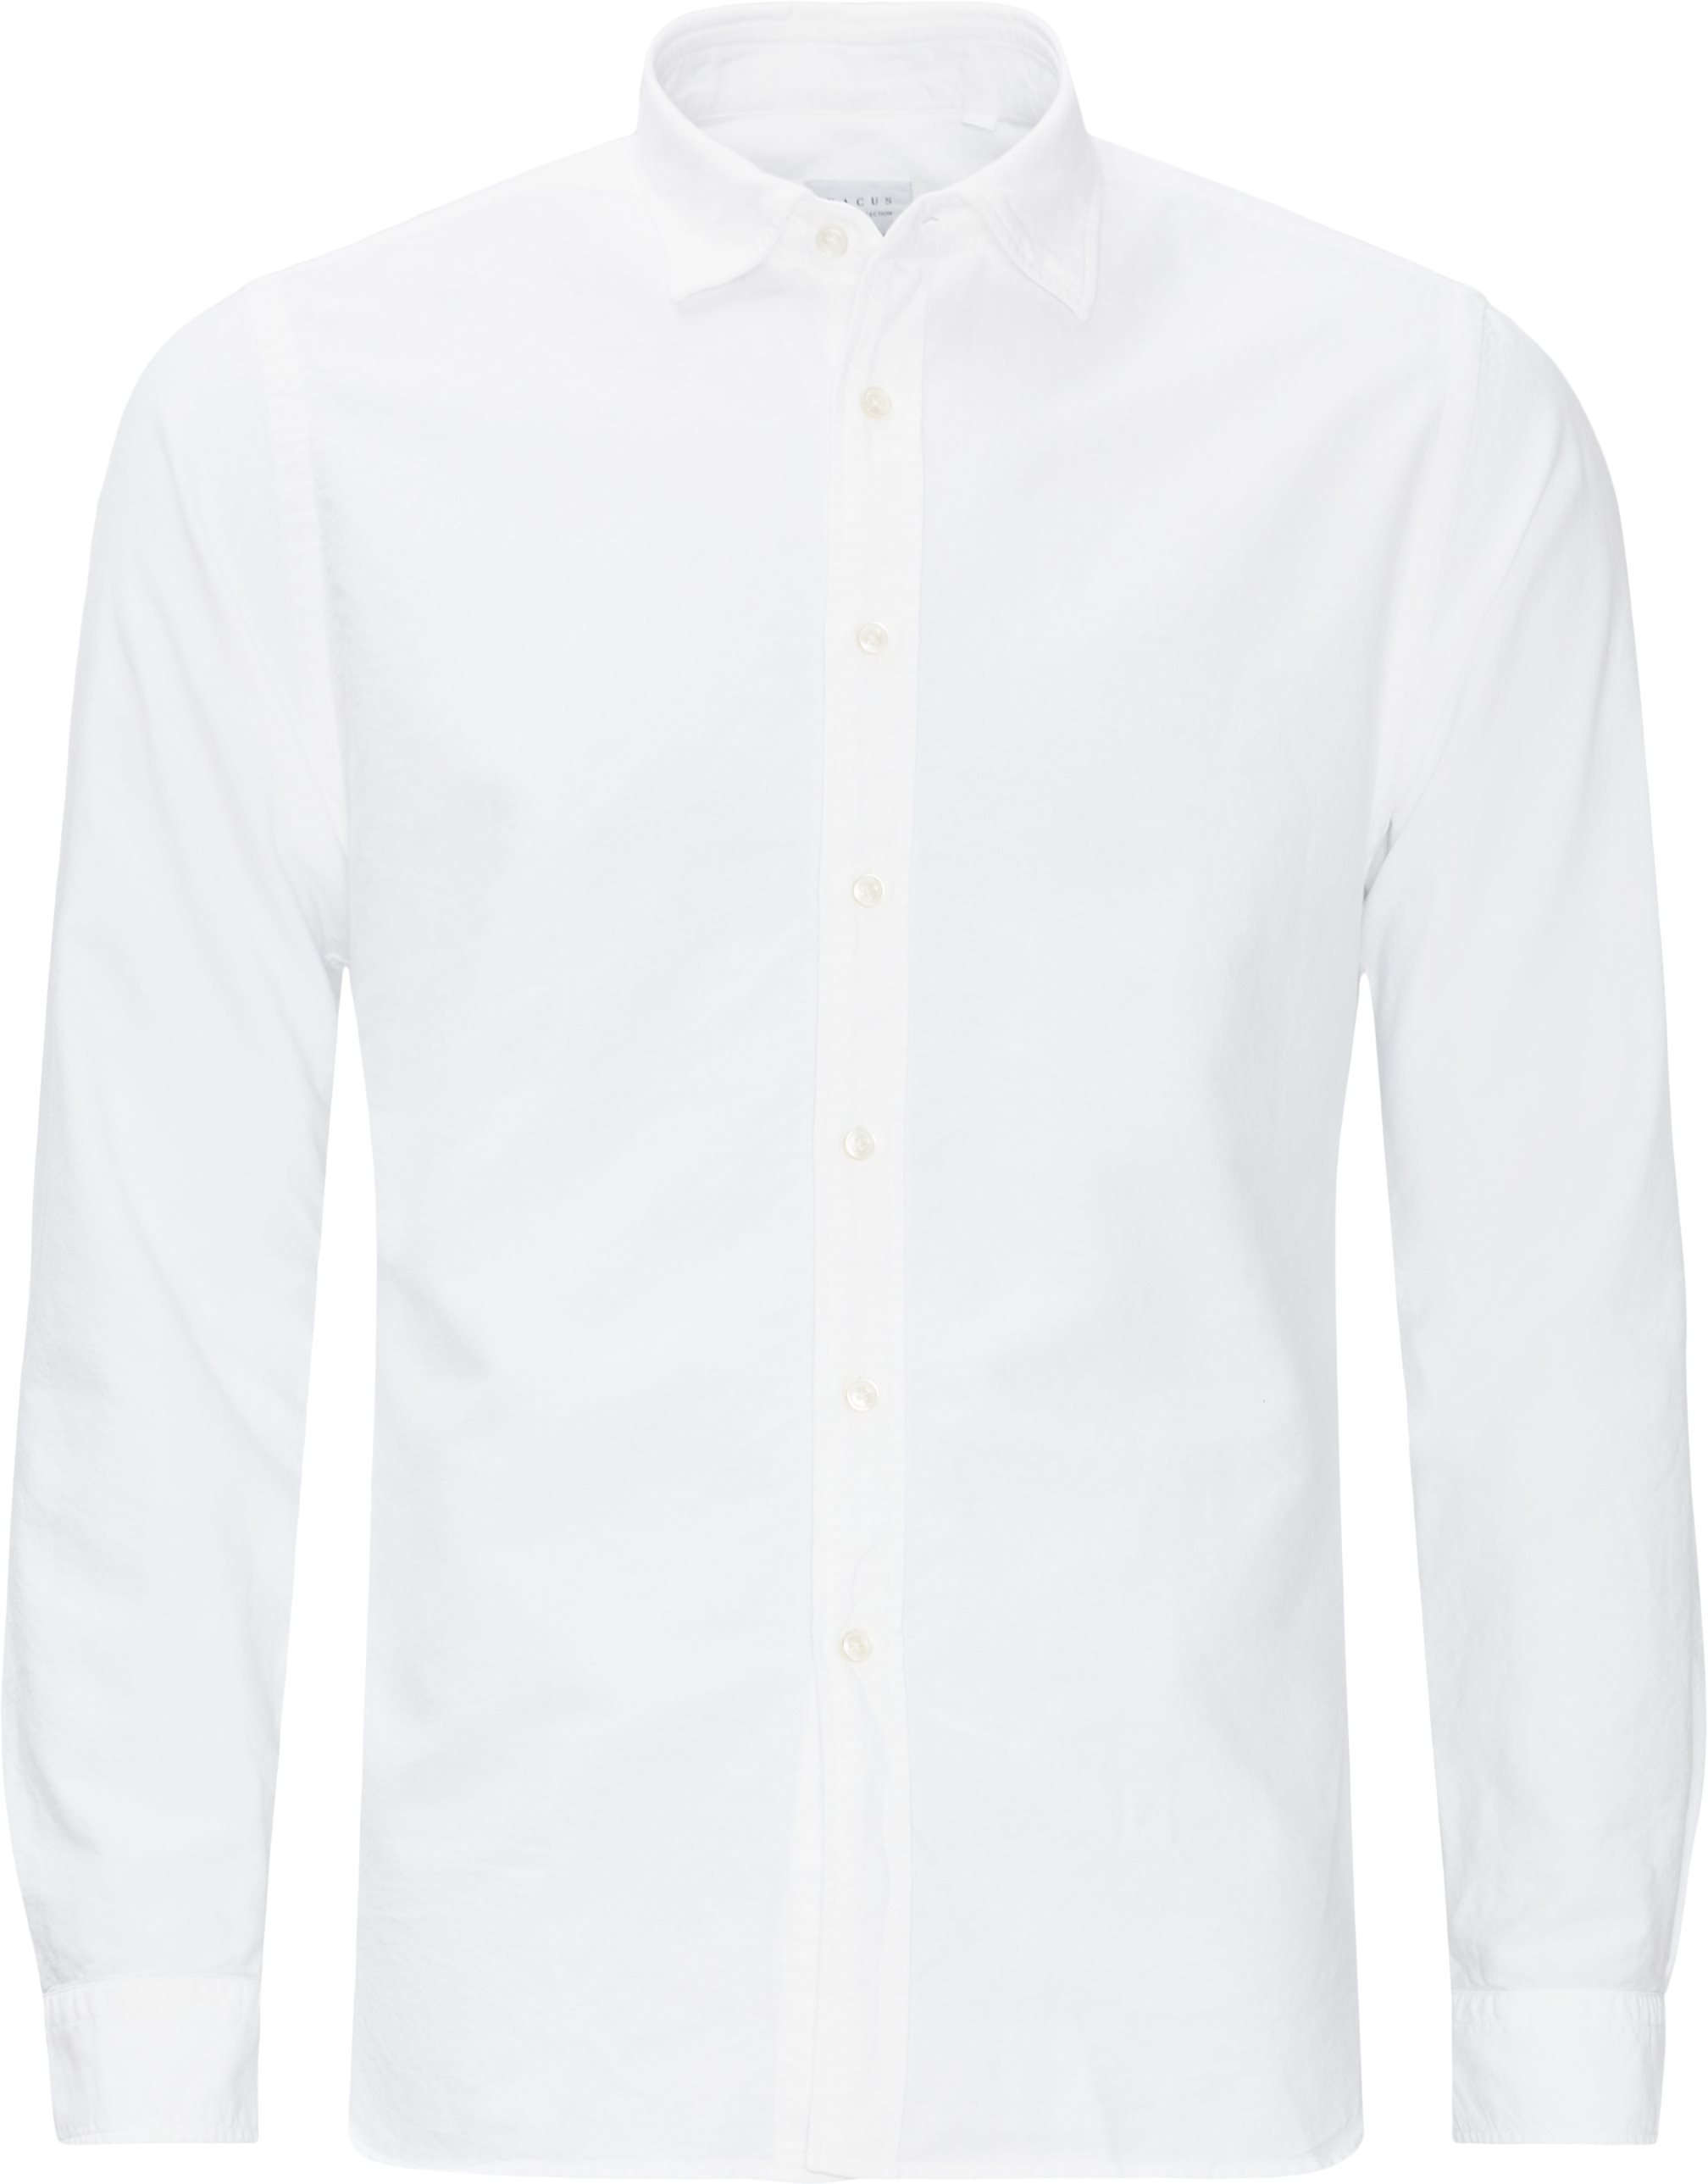 Classic Shirt - Skjorter - Slim fit - Hvid